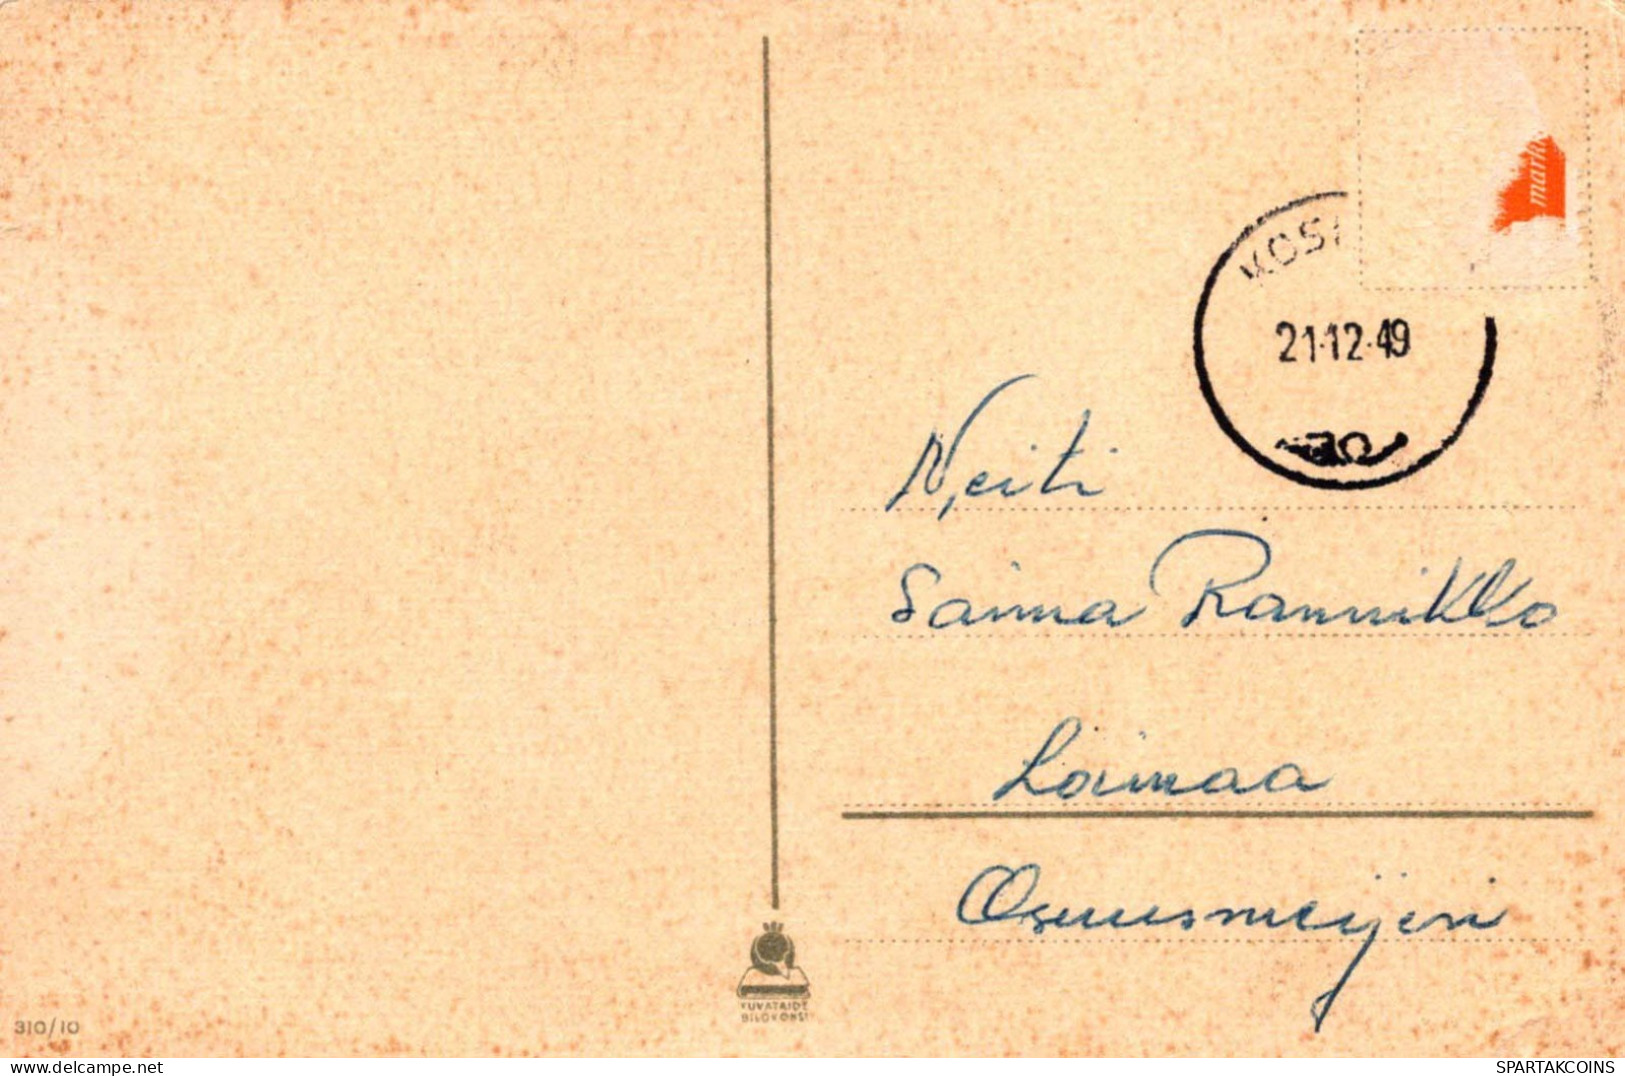 PAPÁ NOEL Feliz Año Navidad GNOMO Vintage Tarjeta Postal CPSMPF #PKG420.A - Santa Claus